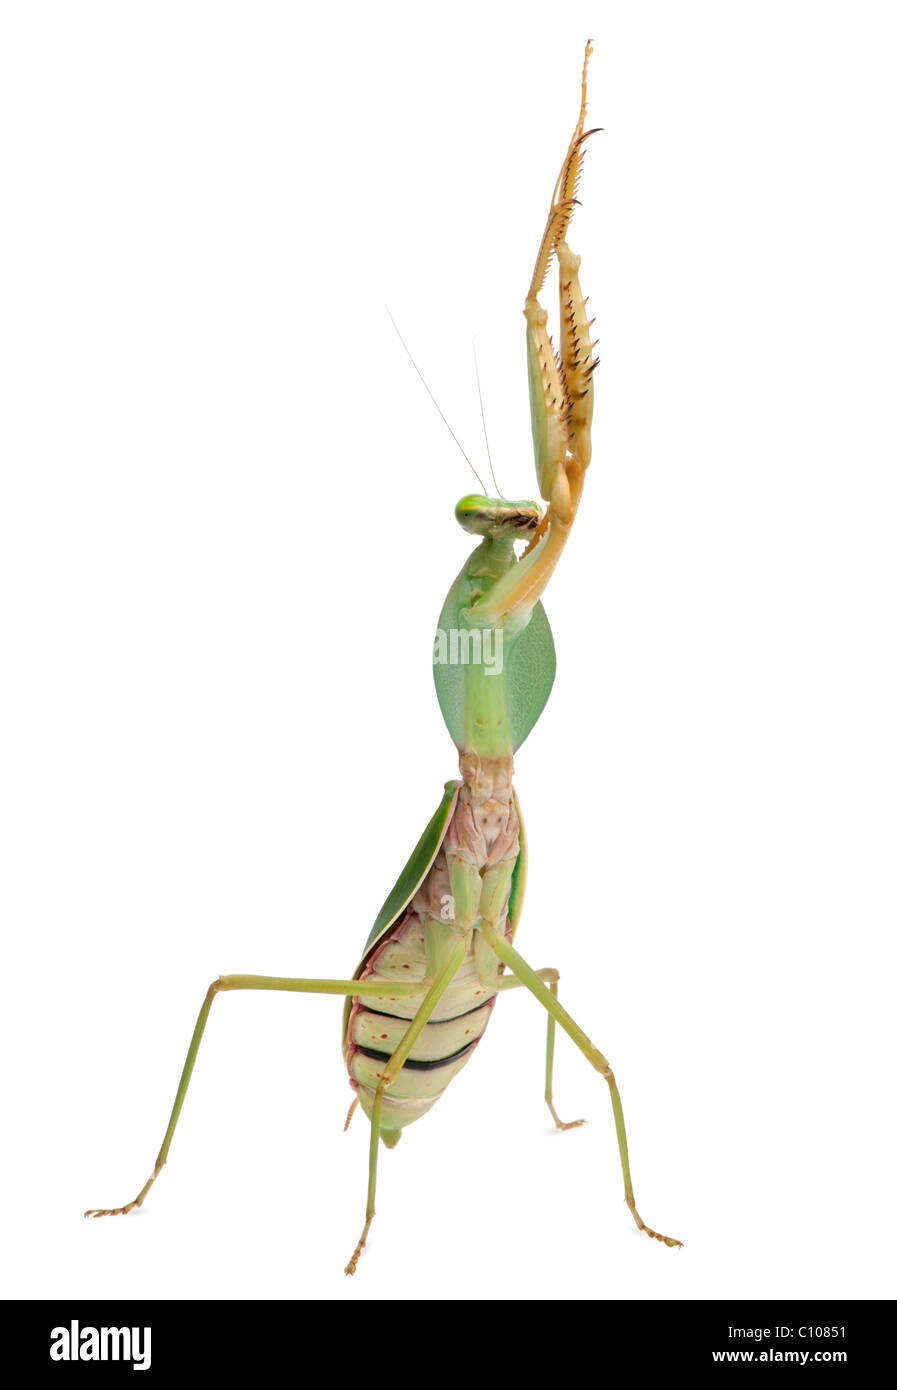 Female Praying Mantis, Rhombodera Basalis, in front of white background Stock Photo